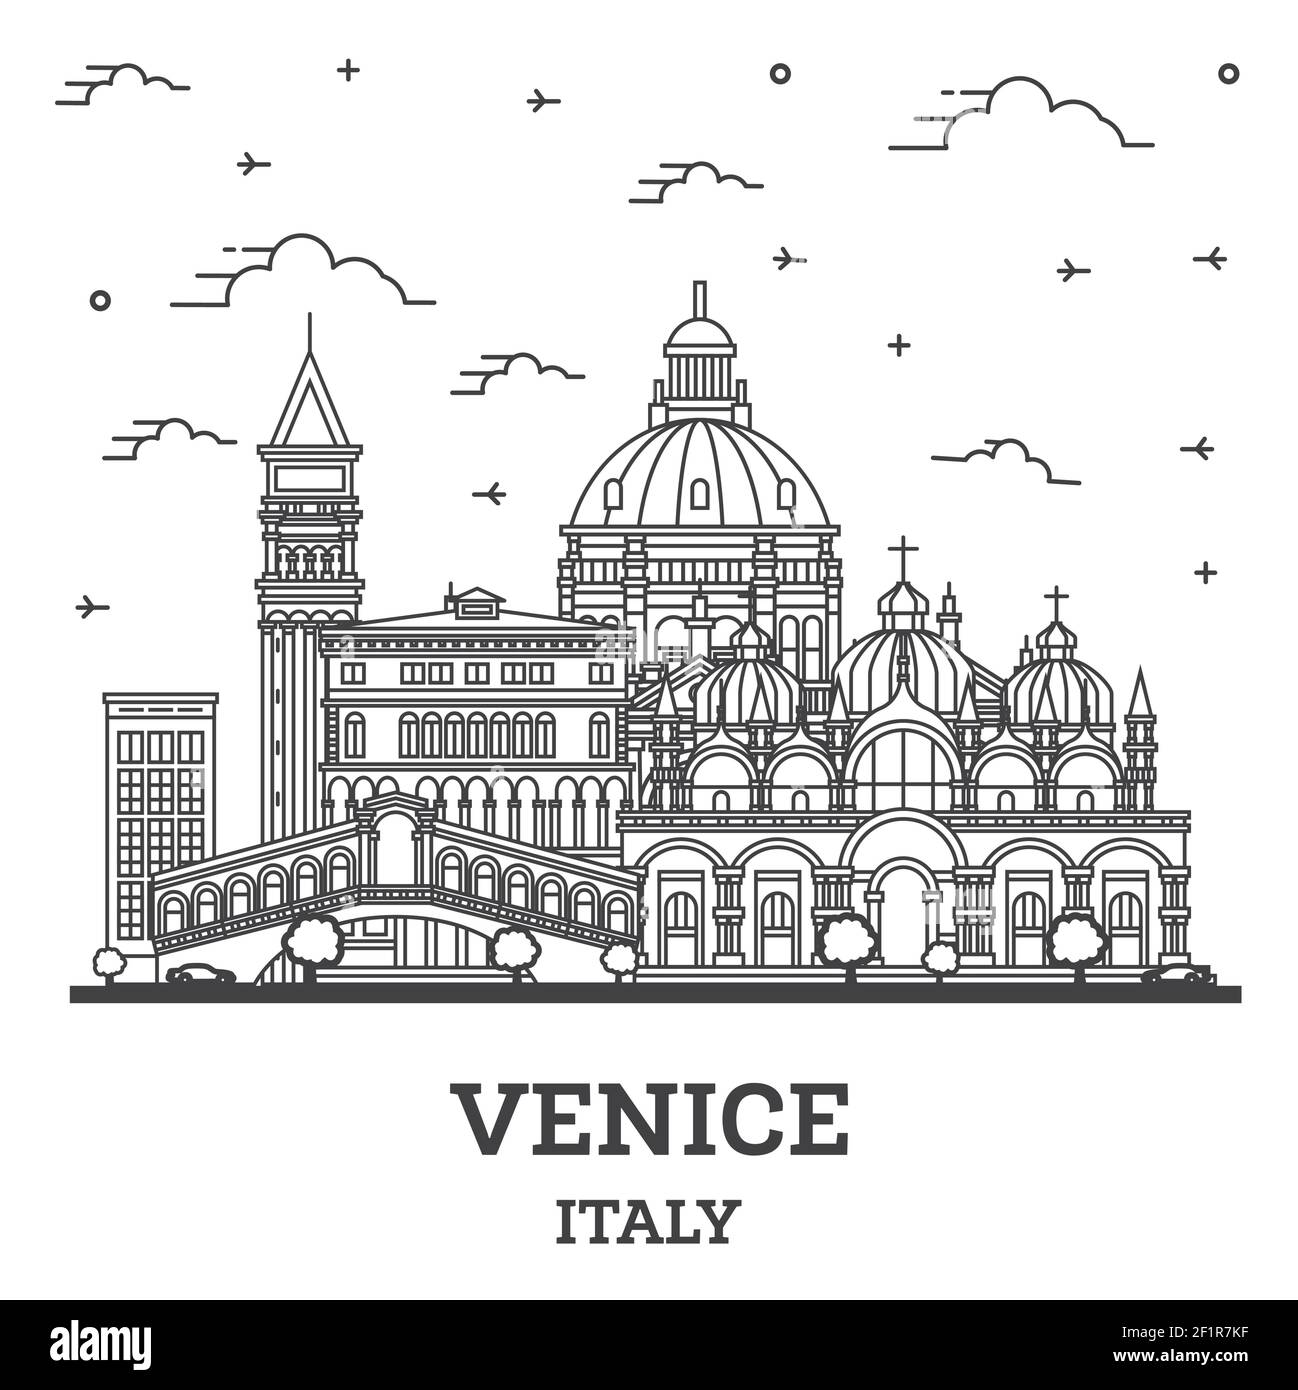 Skizzieren Sie Venedig Italien City Skyline mit historischen Gebäuden isoliert auf Weiß. Vektorgrafik. Stadtbild von Venedig mit Wahrzeichen. Stock Vektor